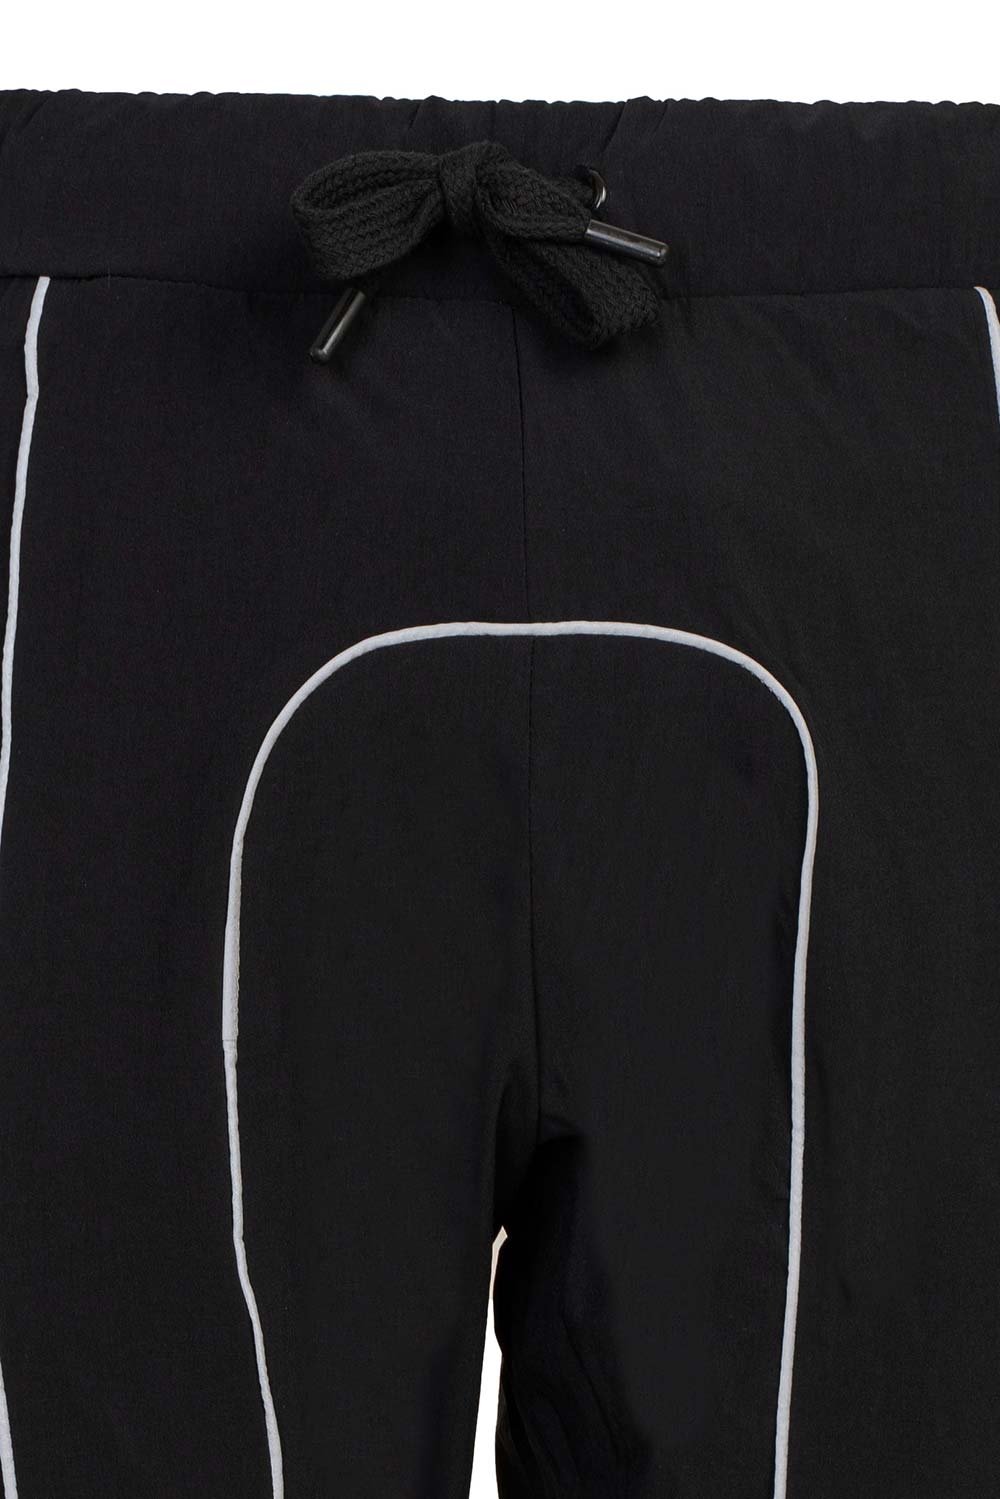 Pantaloni oversize negri print Geometric 1